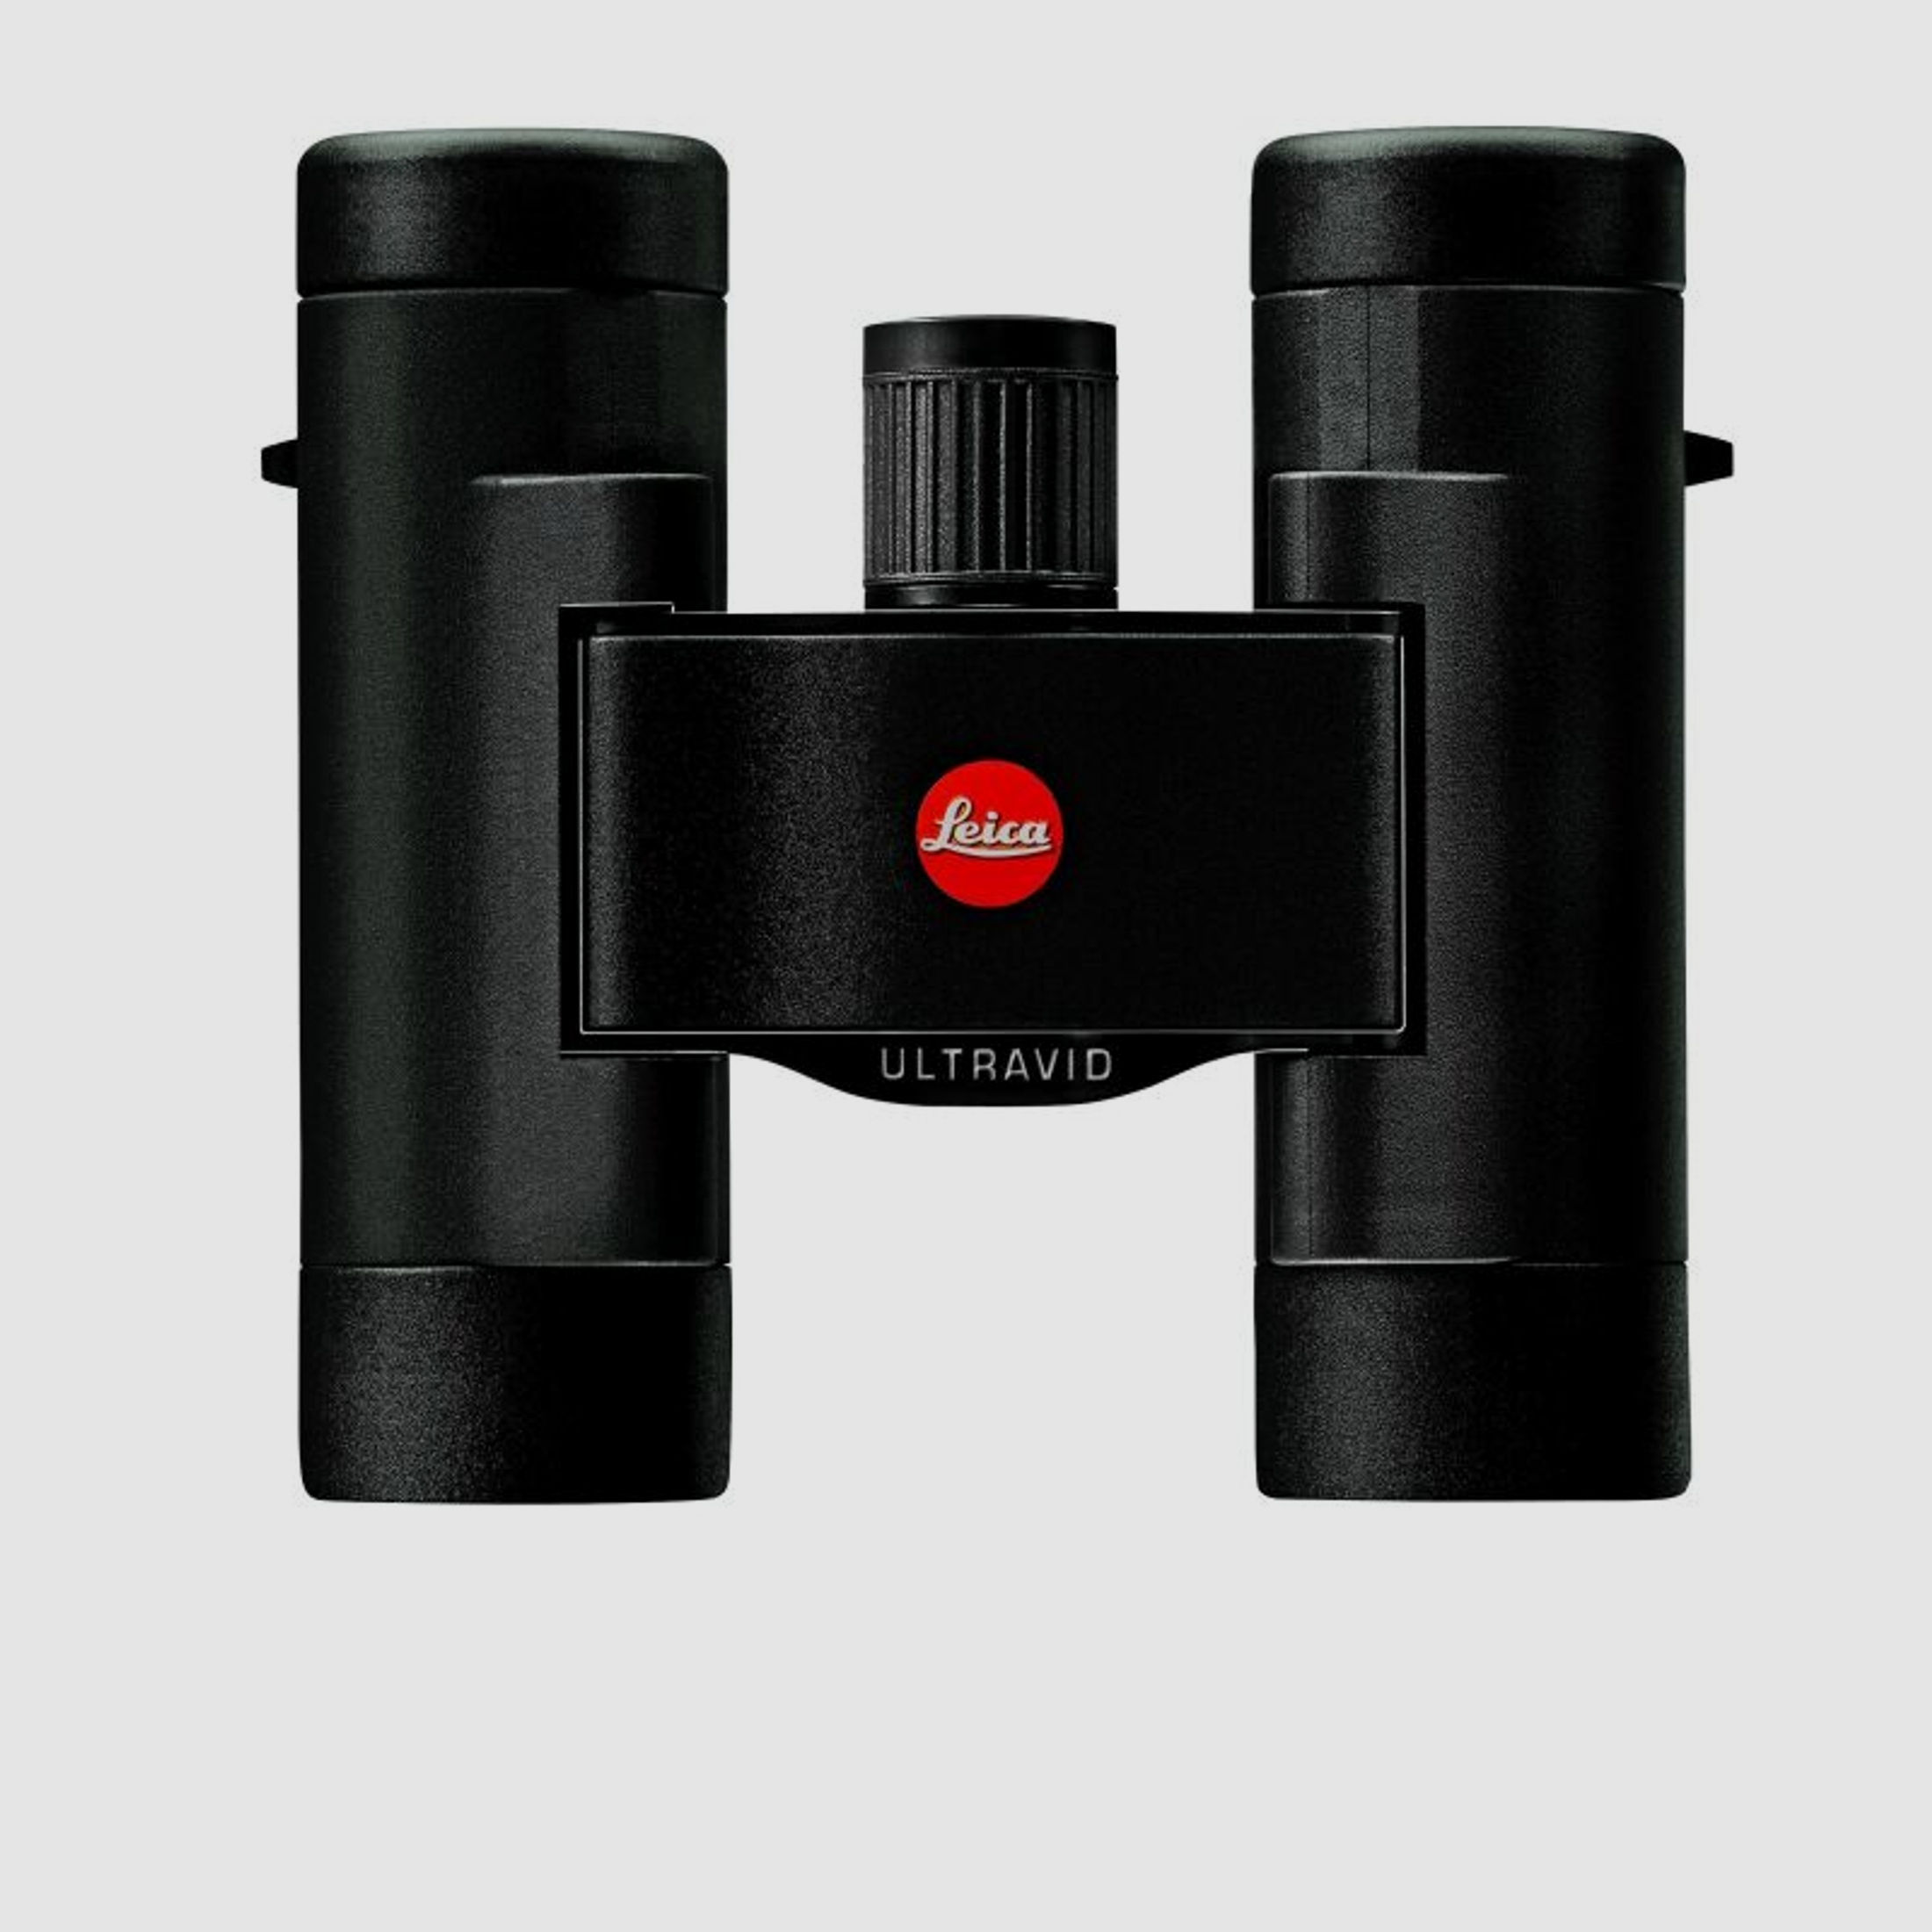 Leica Fernglas ULTRAVID 8x20 BR Aqua Dura, schwarz